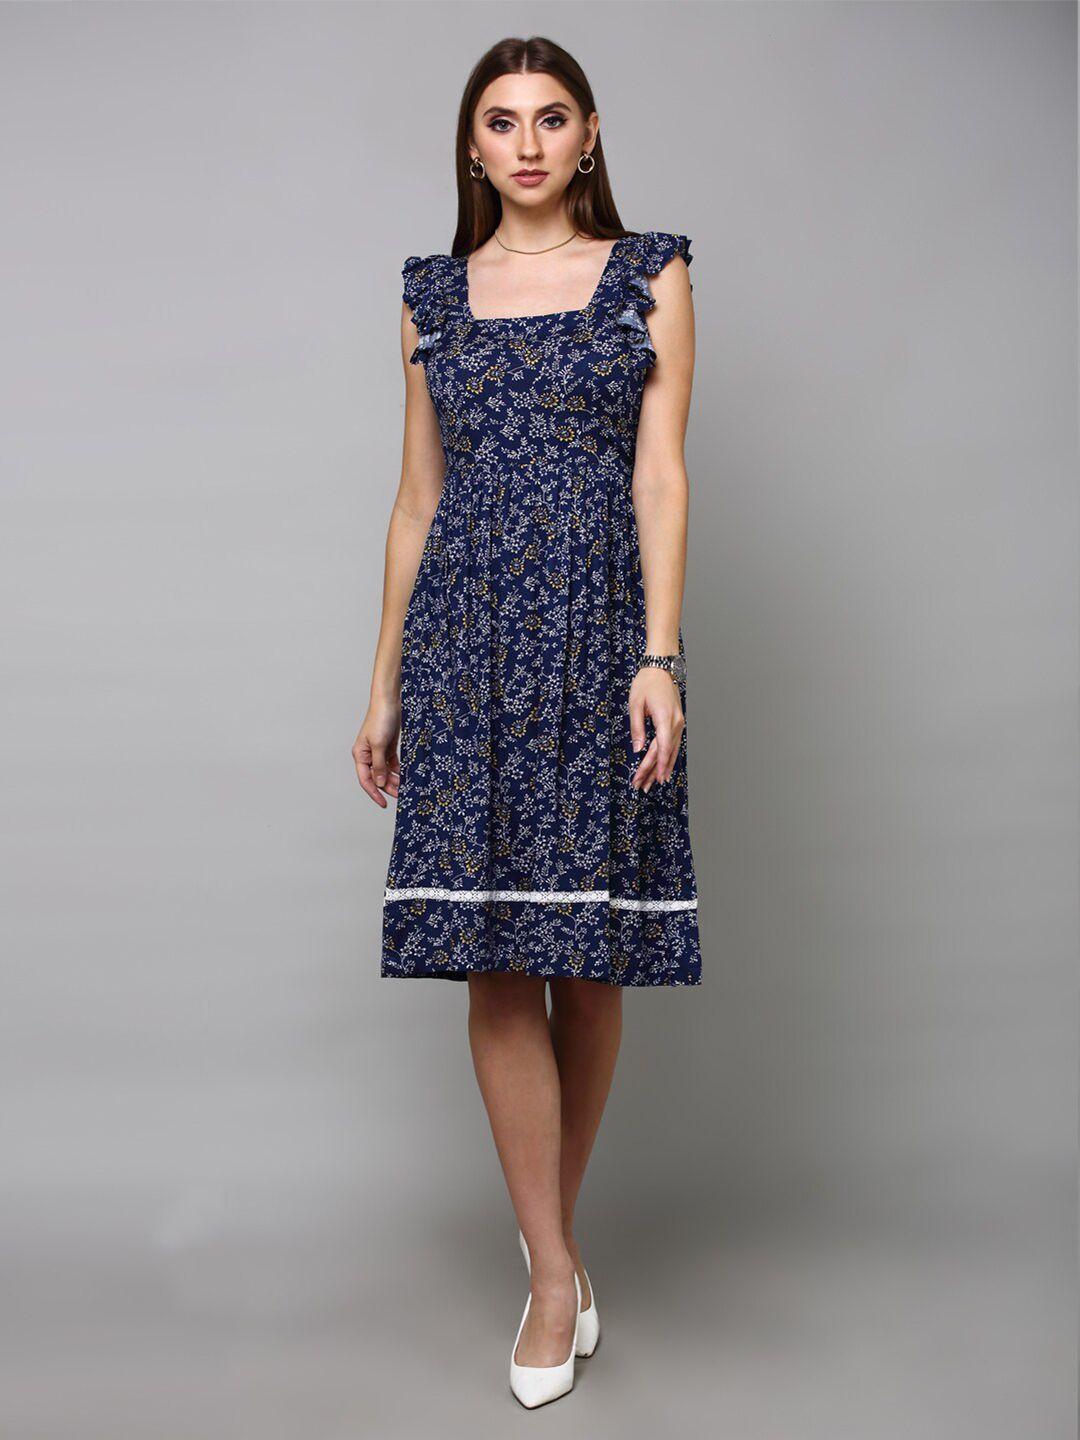 aturabi navy blue floral dress